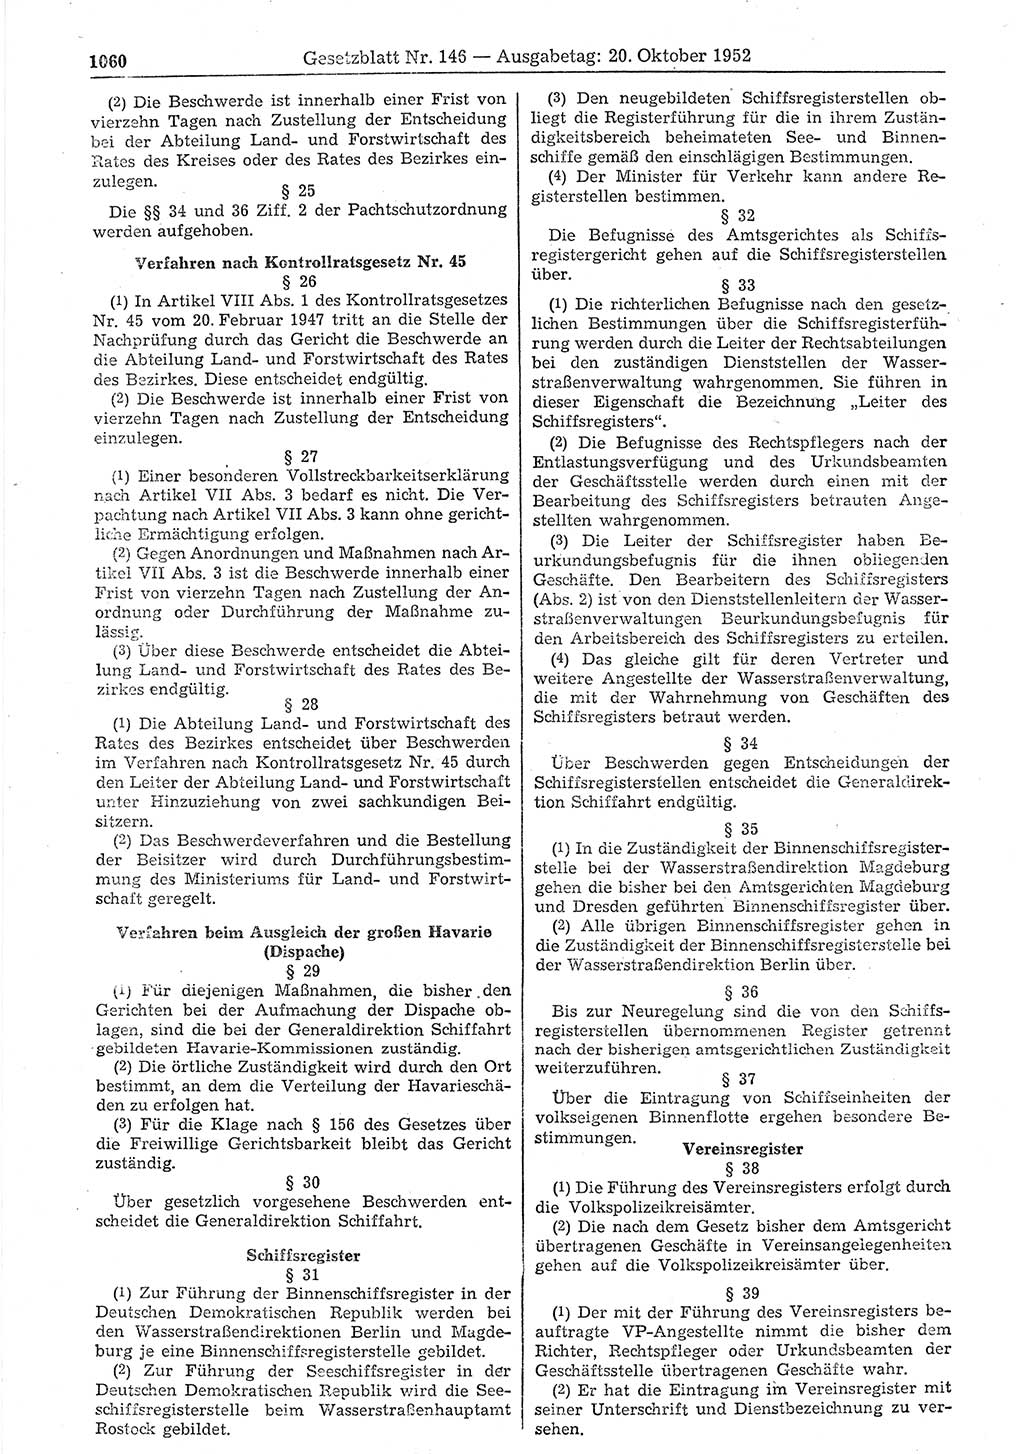 Gesetzblatt (GBl.) der Deutschen Demokratischen Republik (DDR) 1952, Seite 1060 (GBl. DDR 1952, S. 1060)